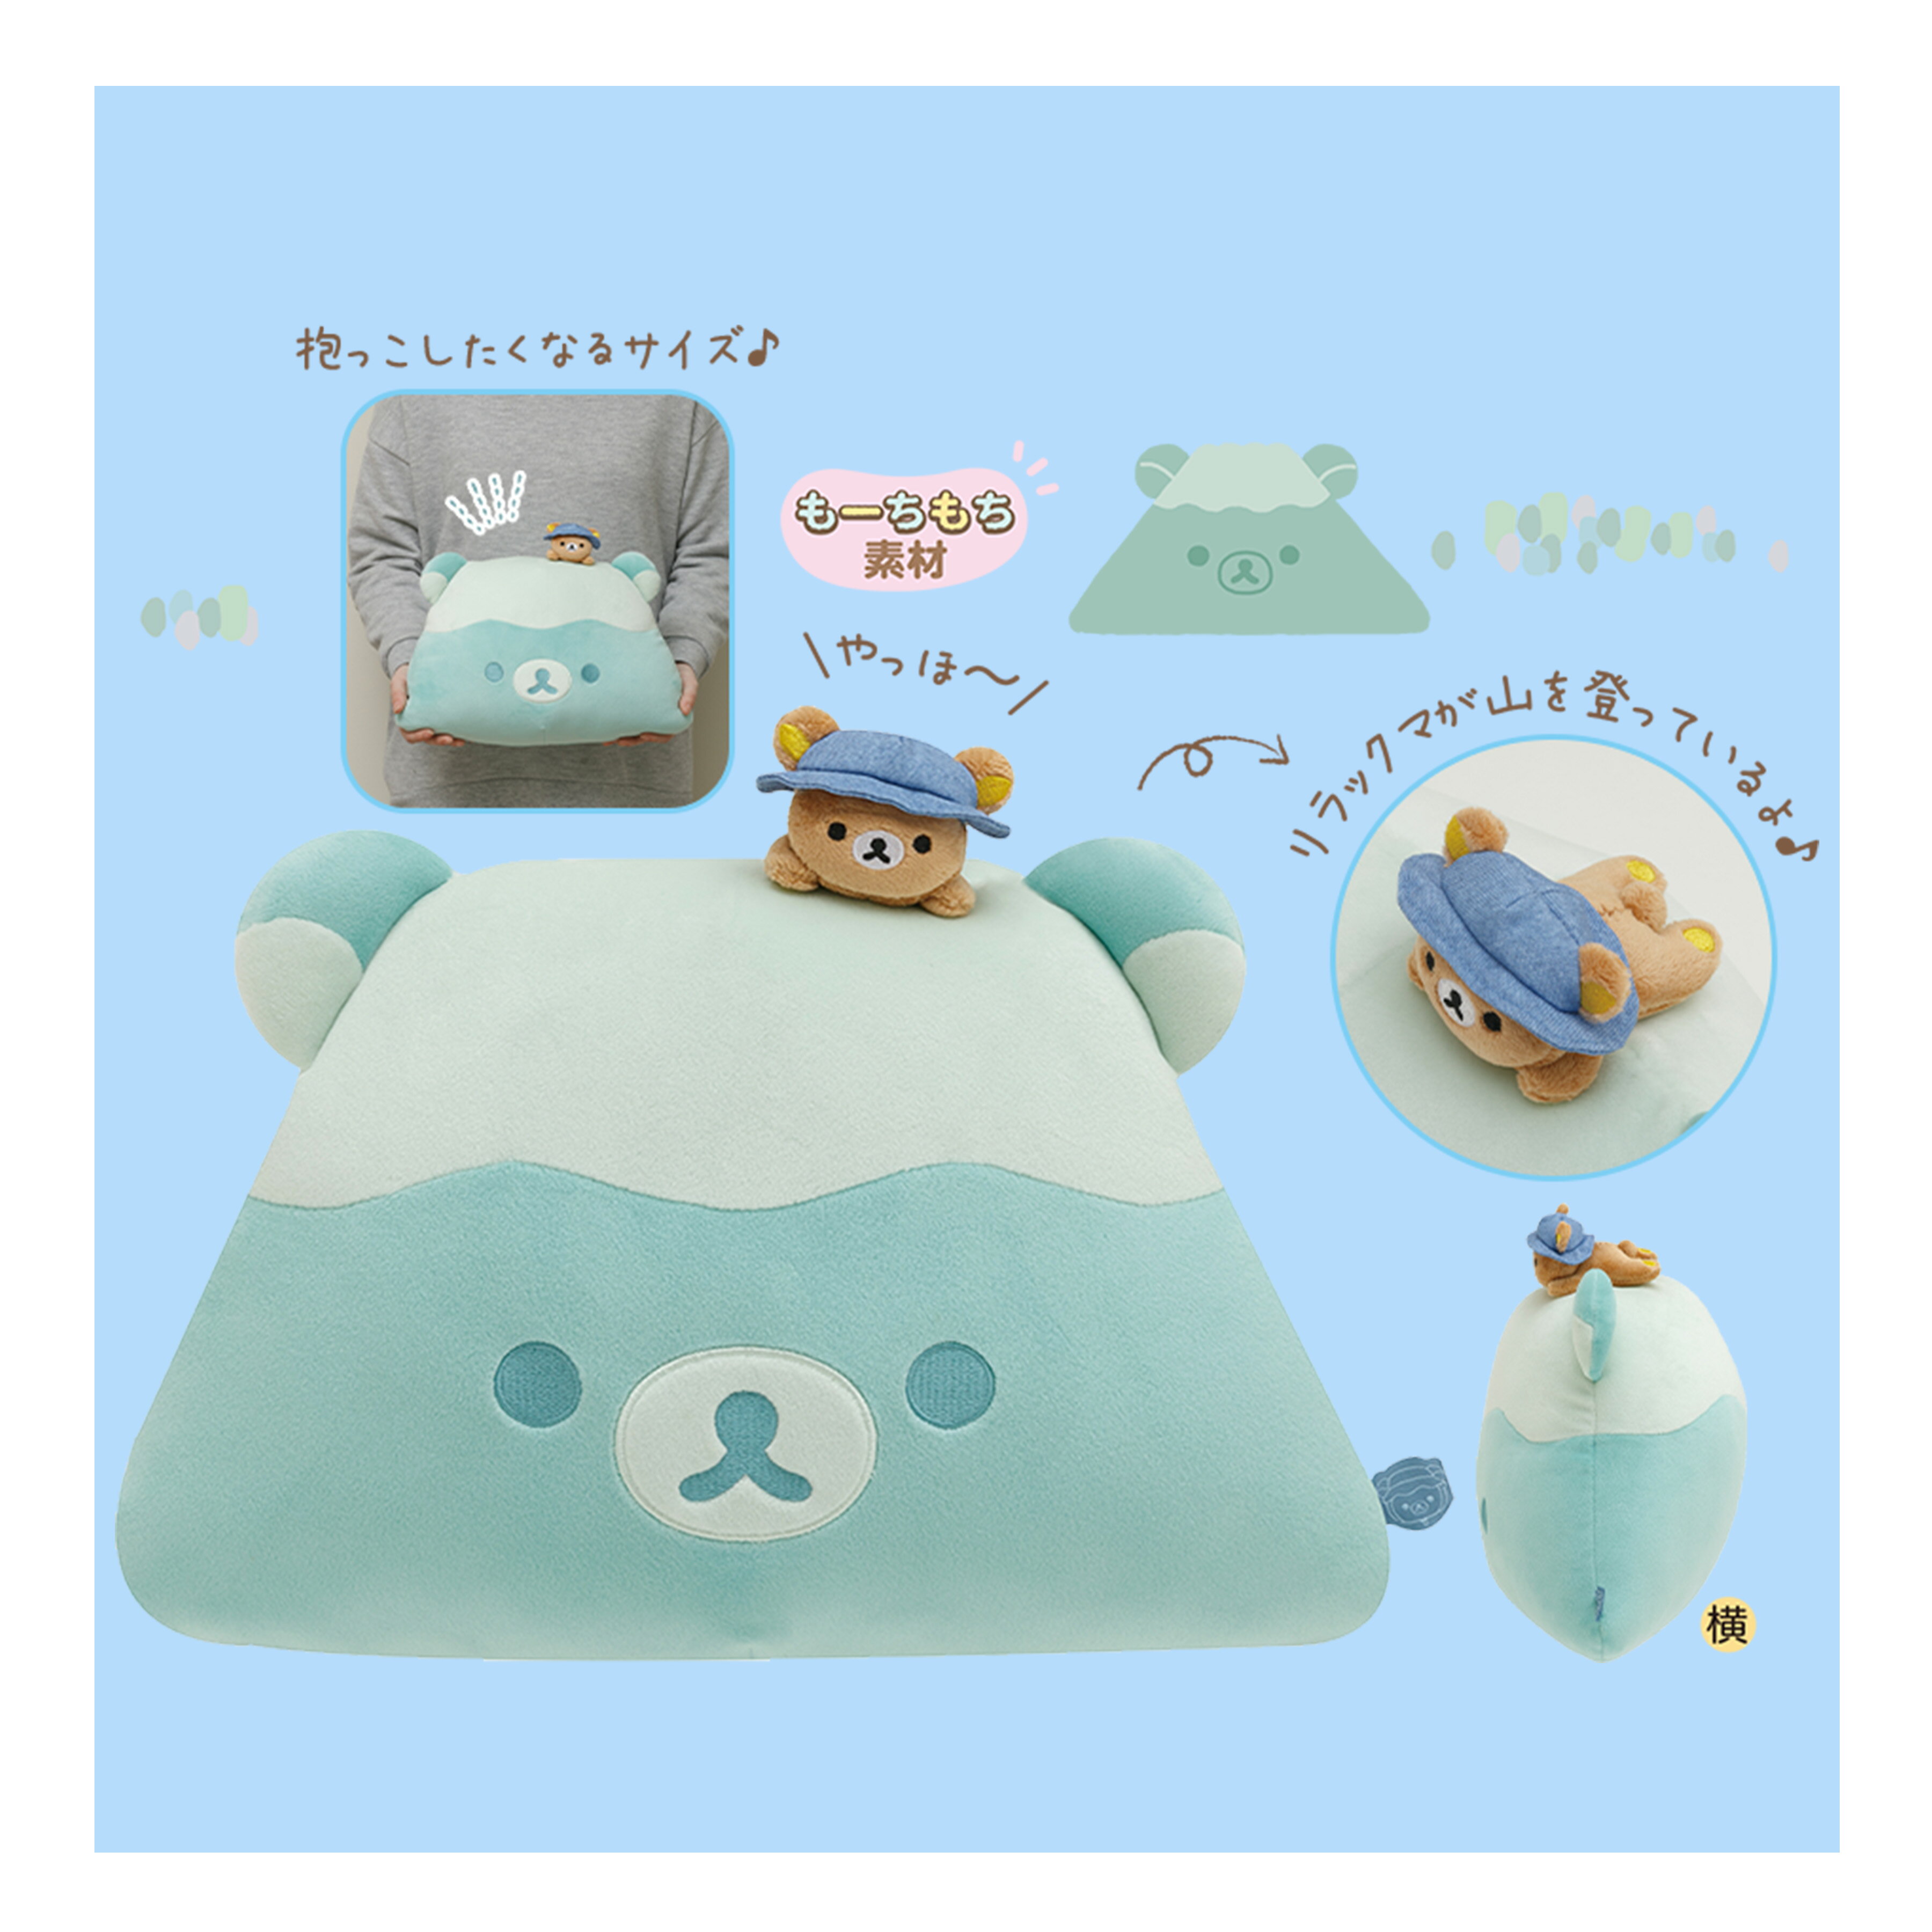 造型小抱枕-拉拉熊 Rilakkuma san-x 日本進口正版授權